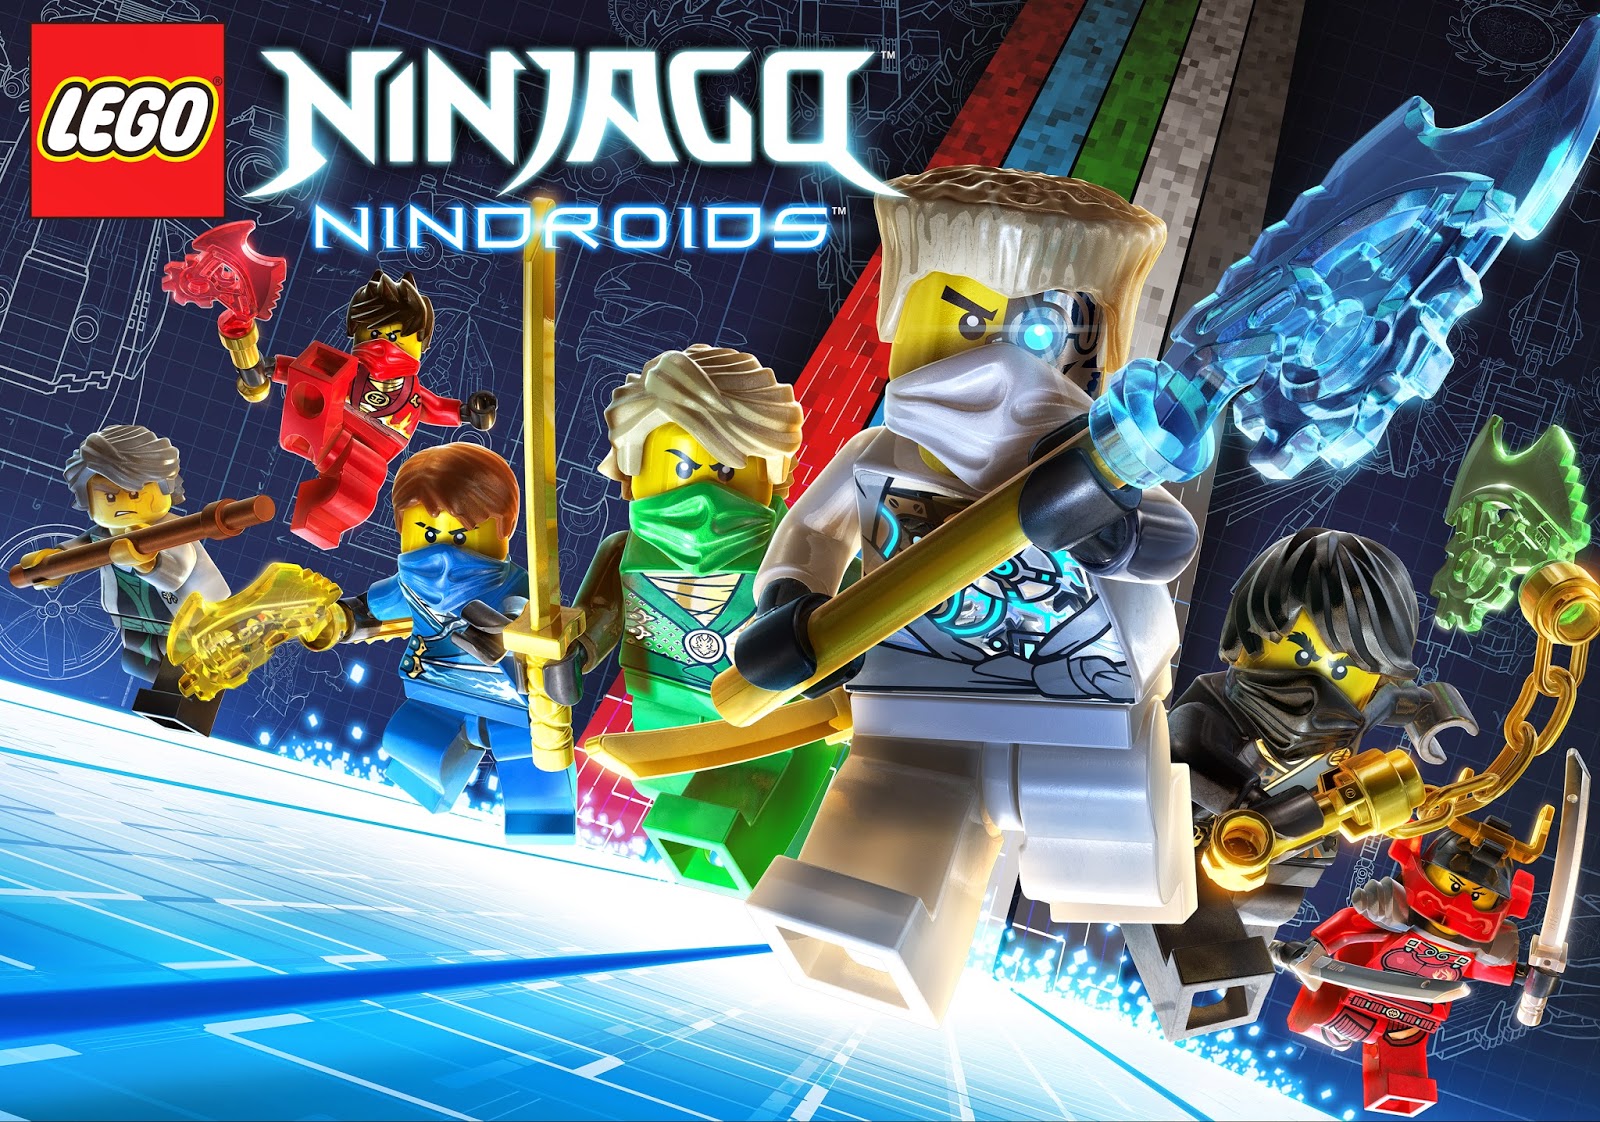 Lego Ninjago Phantom Ninja Porn - ChiIL Mama : WIN a LEGO NINJAGO: NINDROIDS GAME ($29.99 ...